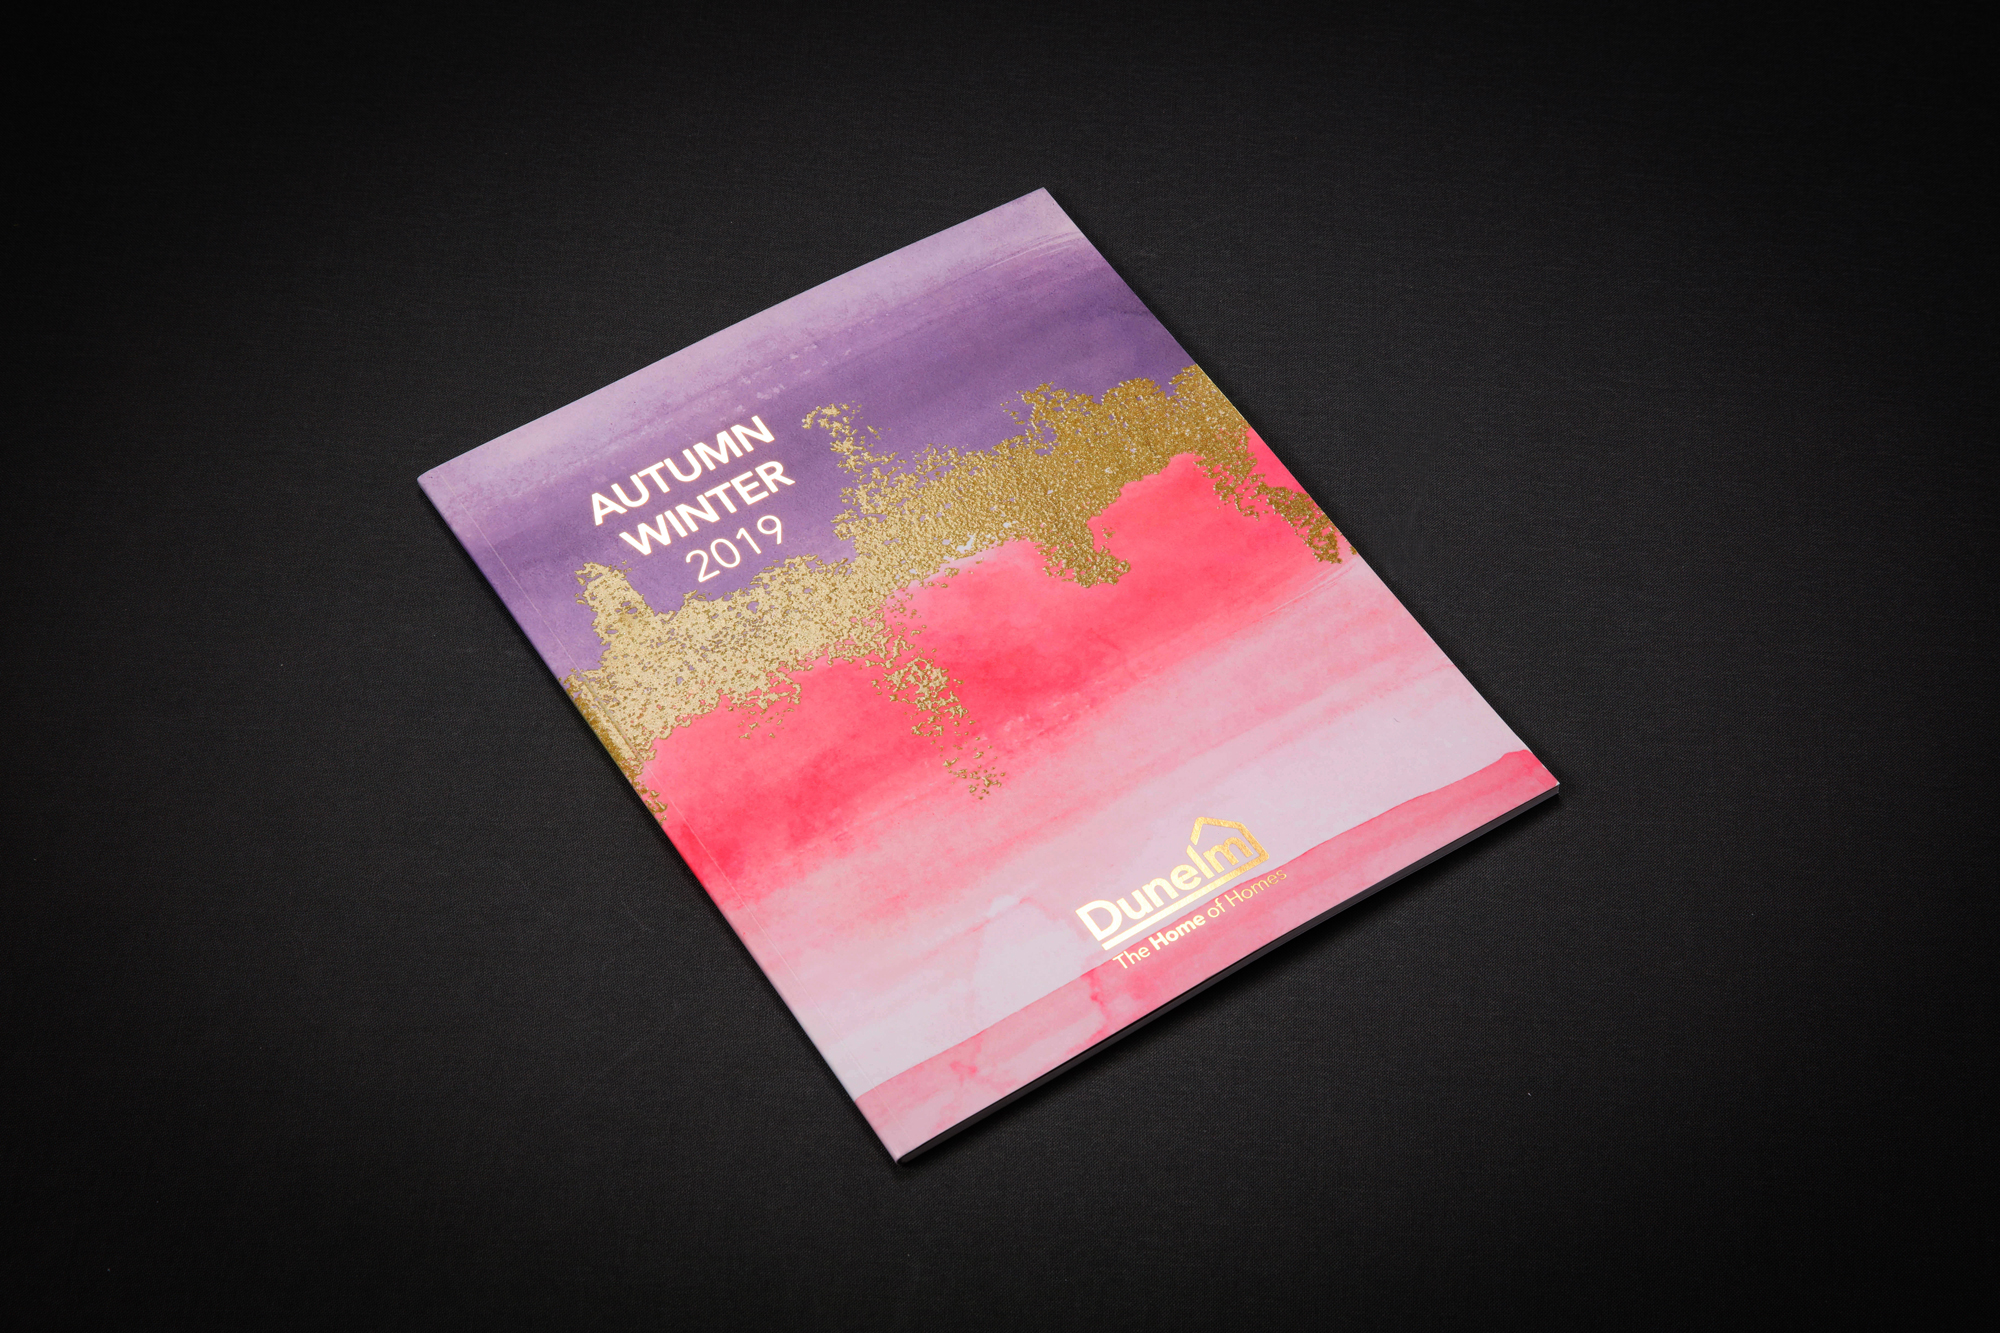 Dunelm Catalogue - Autumn/Winter Cover 2019 - Digital Print